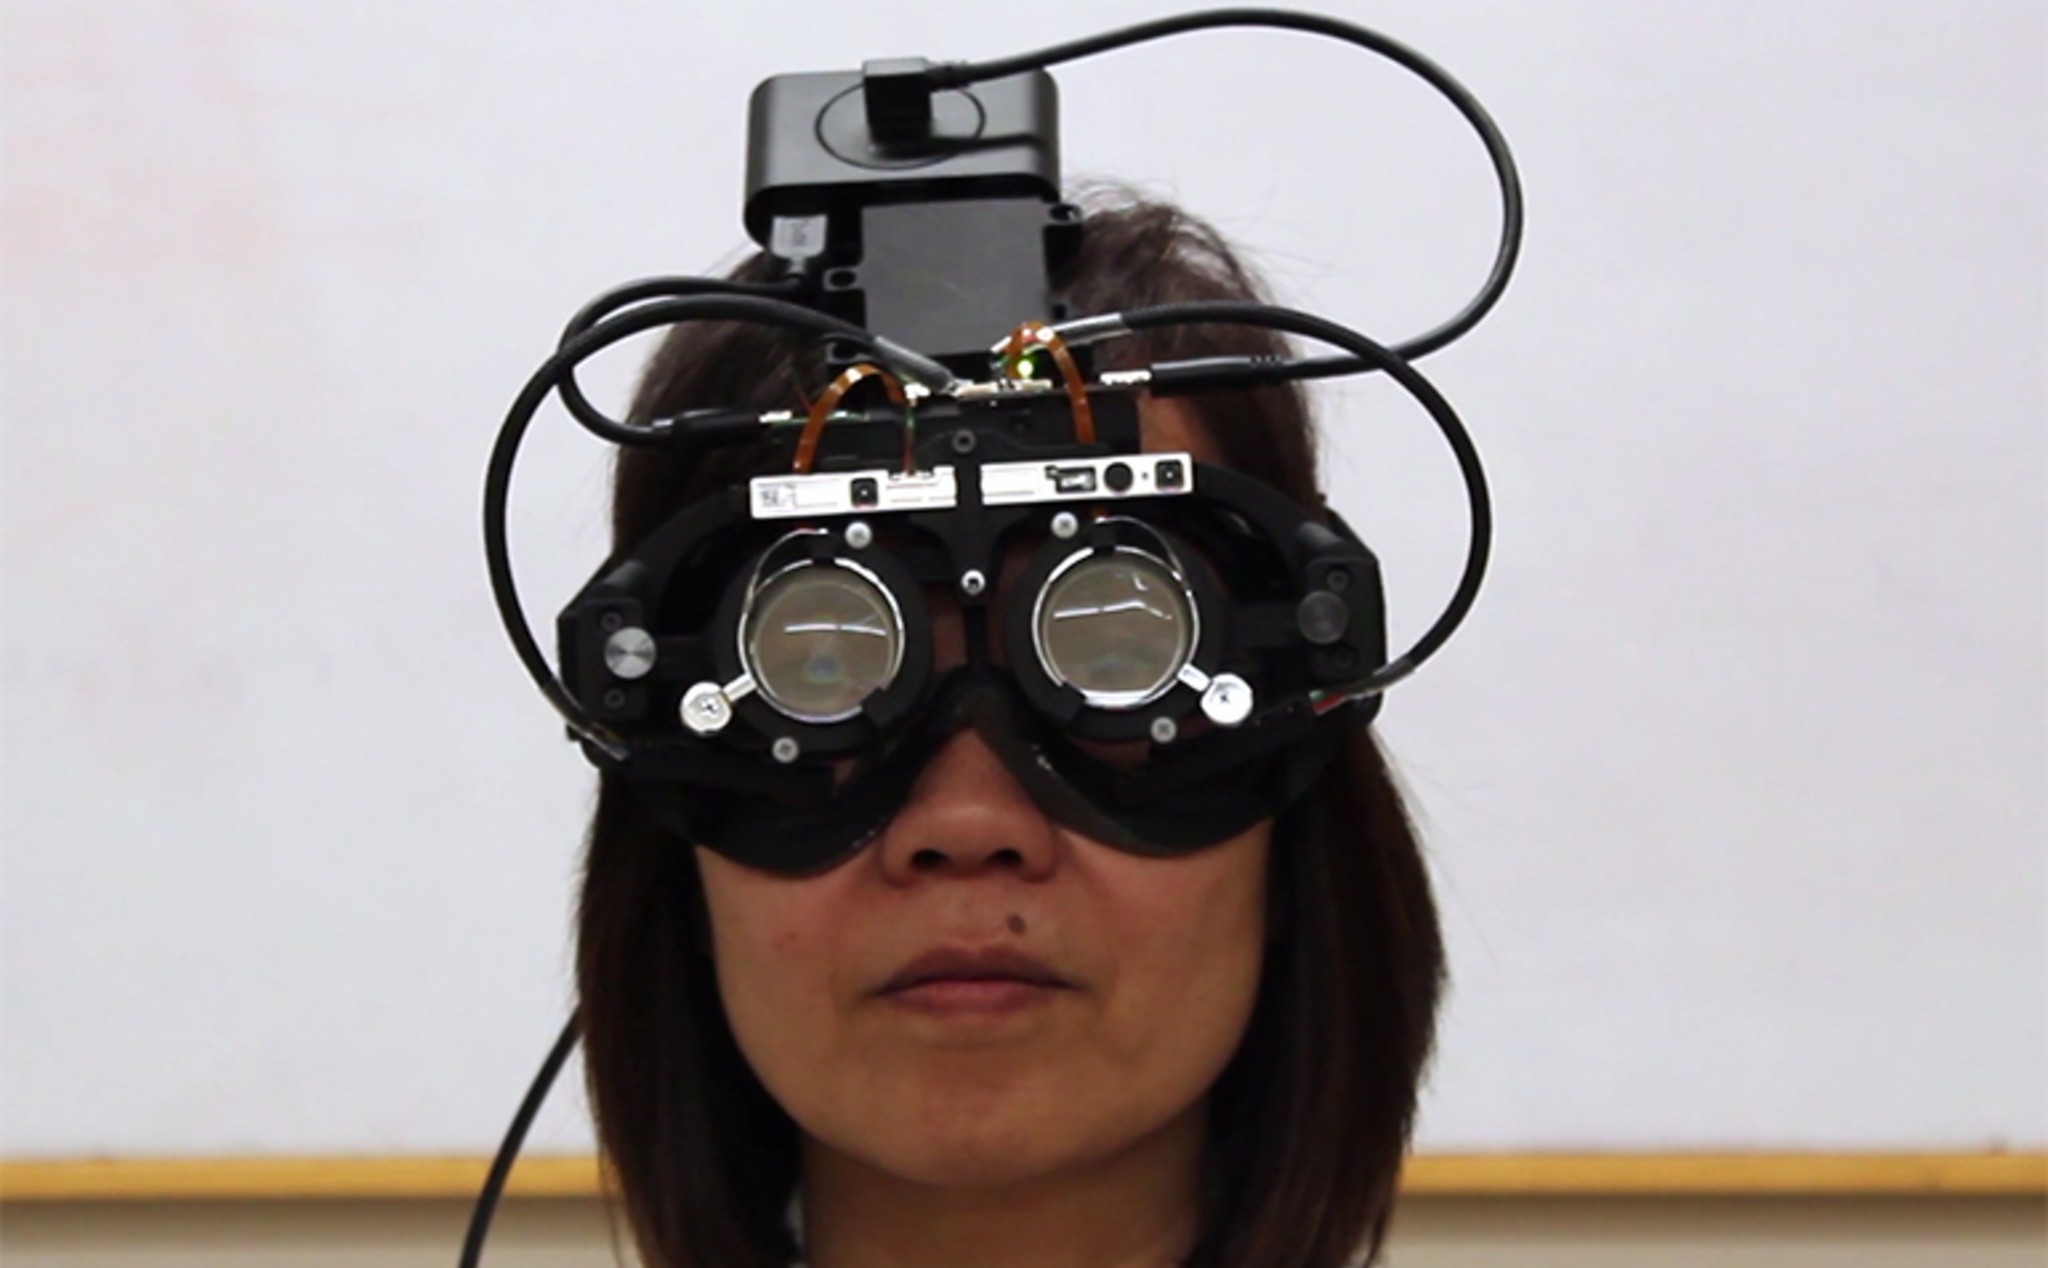 Đại học Standford đang thử nghiệm kính tự chỉnh tiêu cự theo hướng di chuyển của mắt